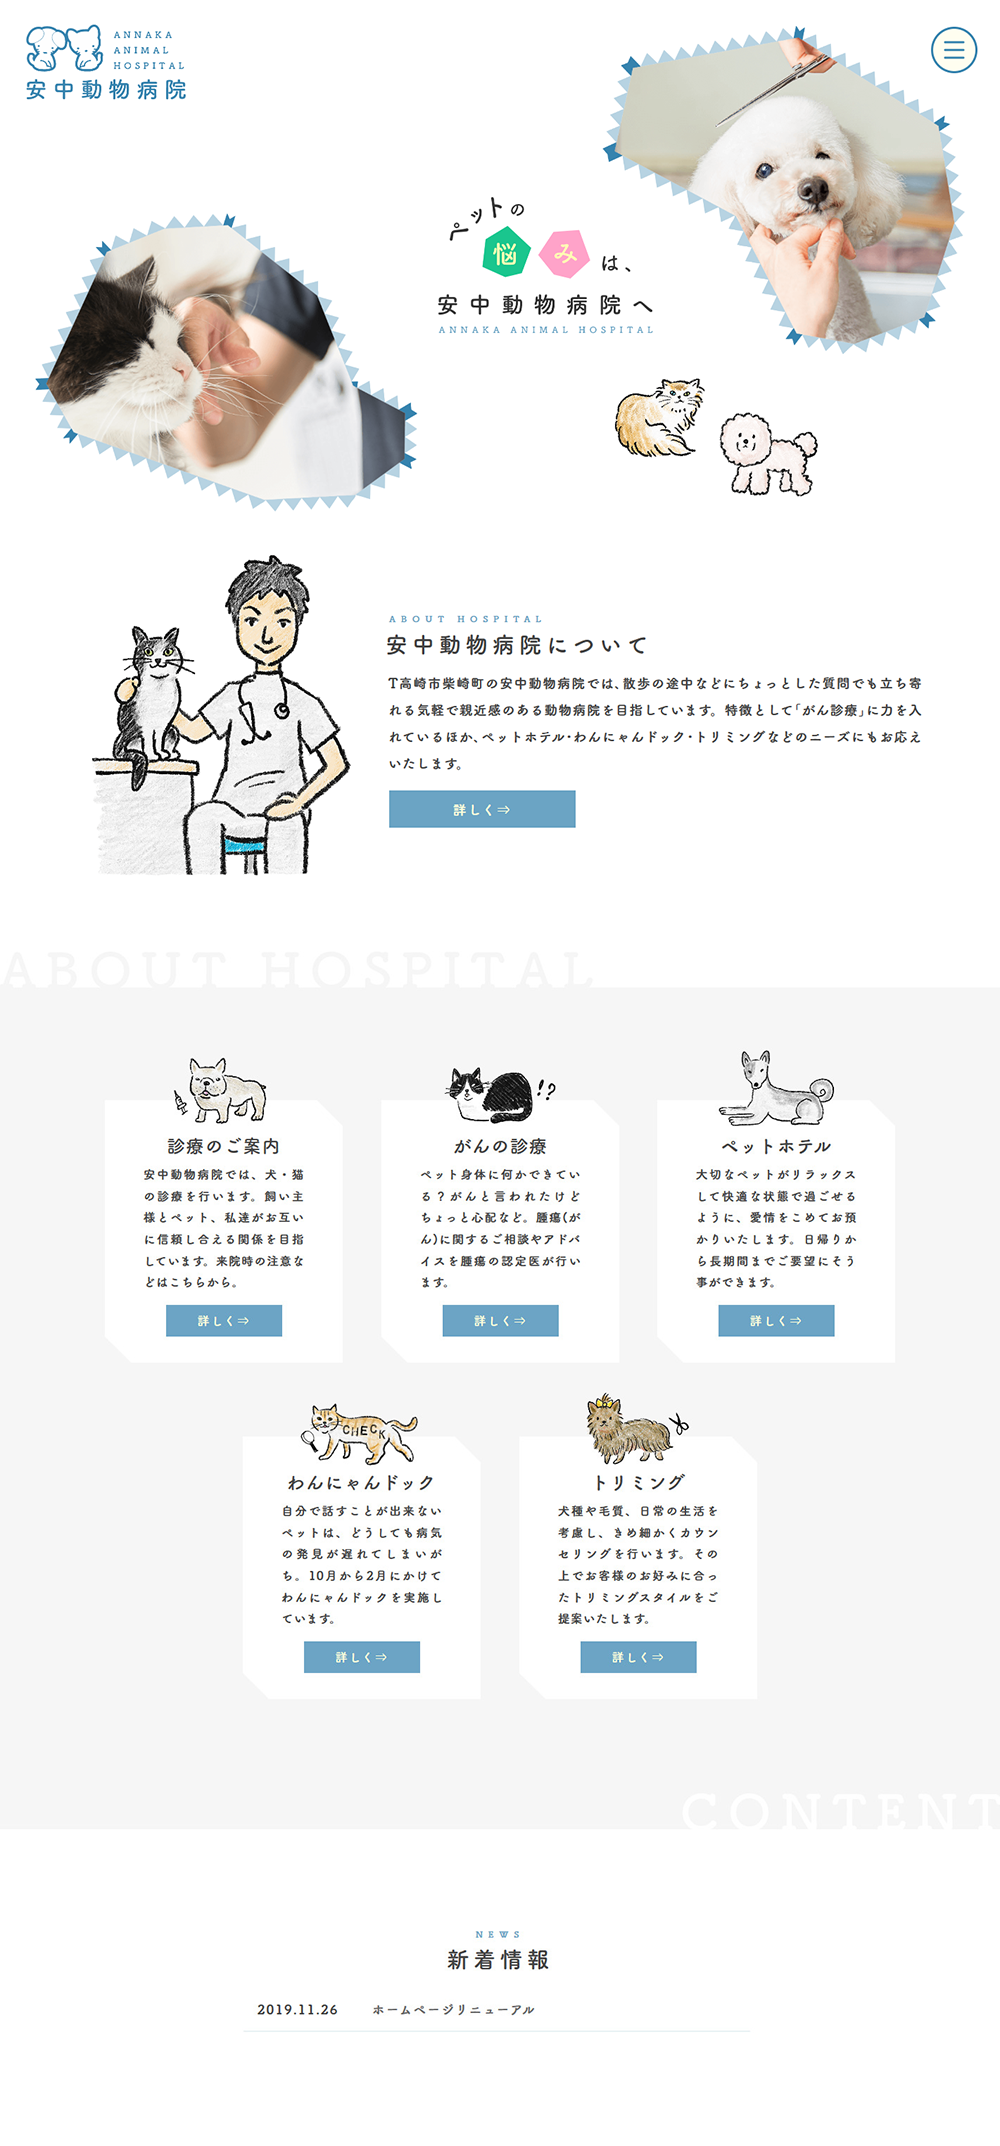 安中動物病院様 ホームページ 制作実績 デザイン事務所 Yururi ゆるり ホームページ制作 Web イラスト グラフィックデザイン